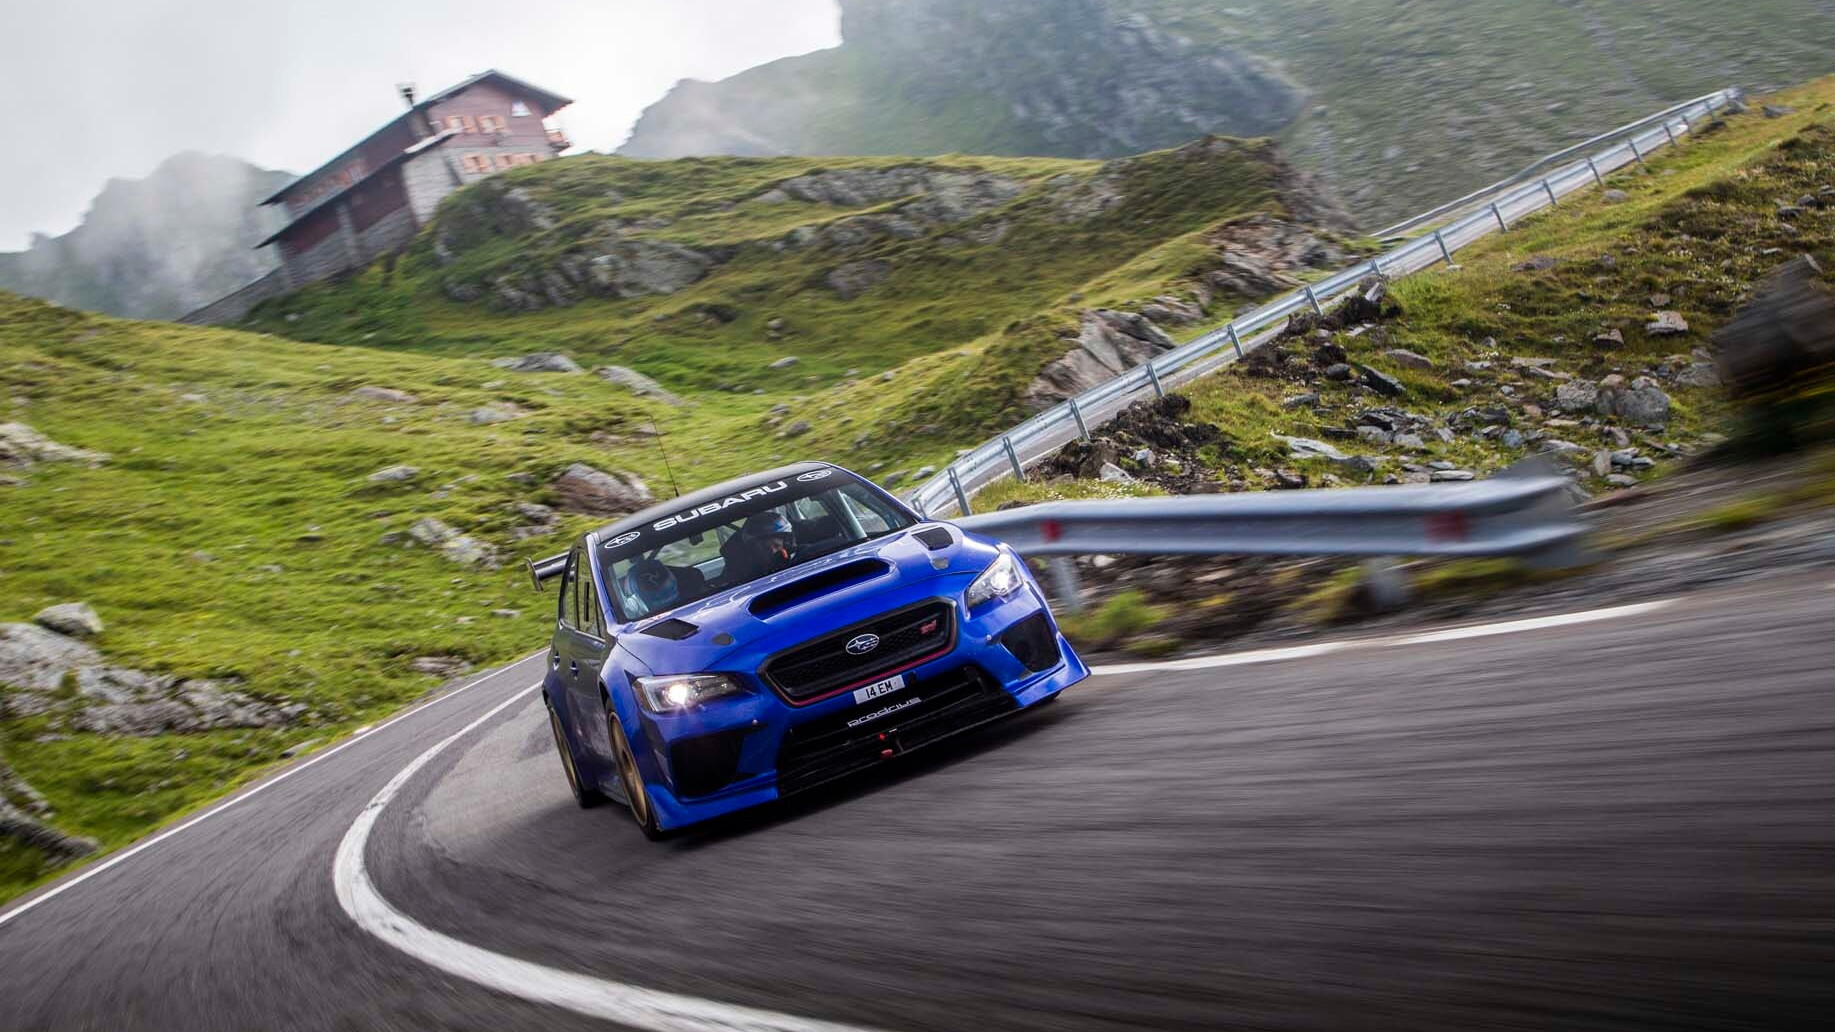 Subaru's record-setting run in Romania